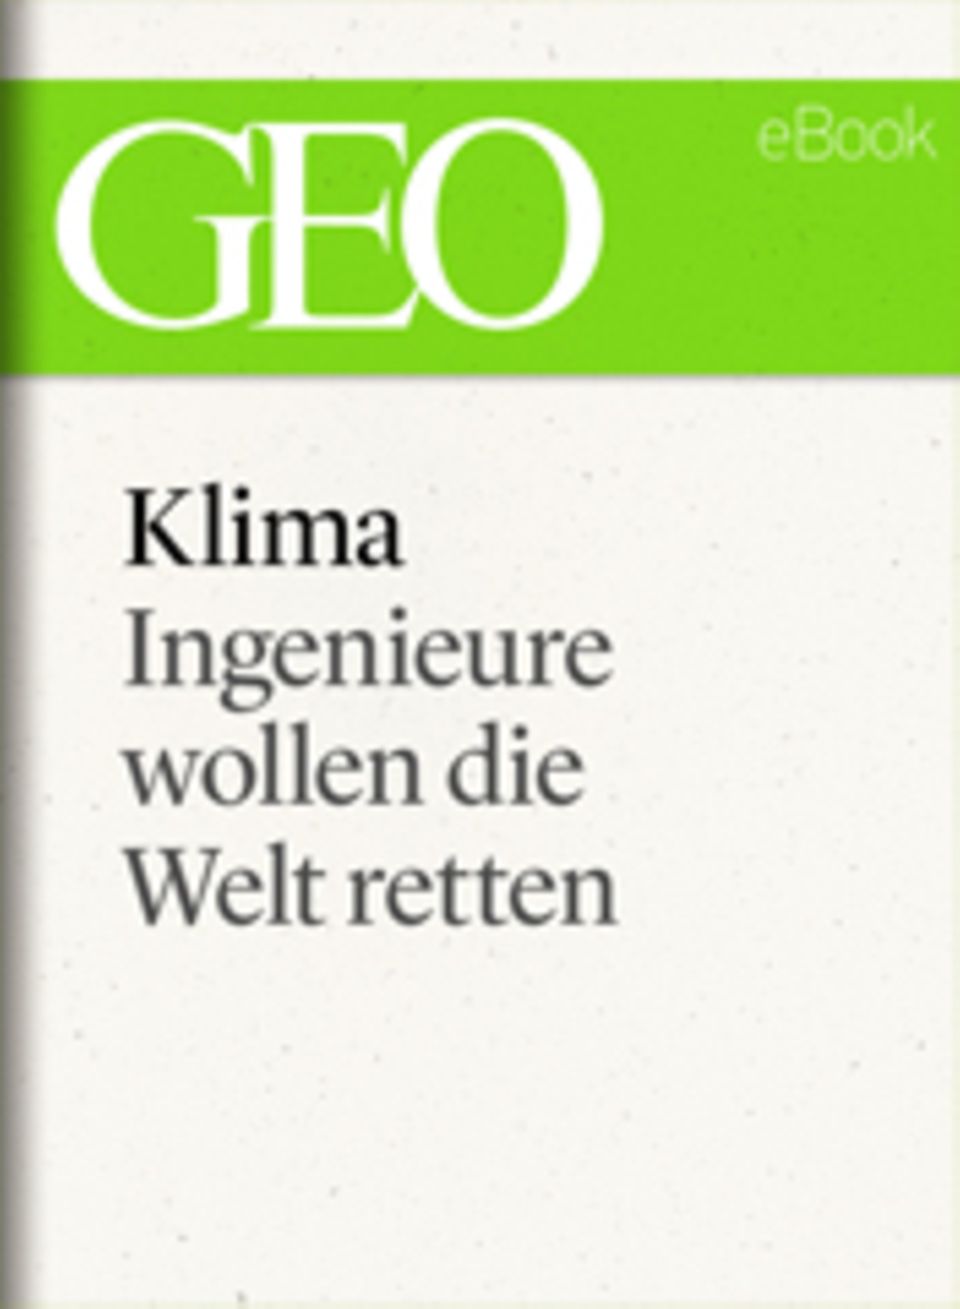 Ingenieure wollen die Welt retten: GEO eBook "Klima"